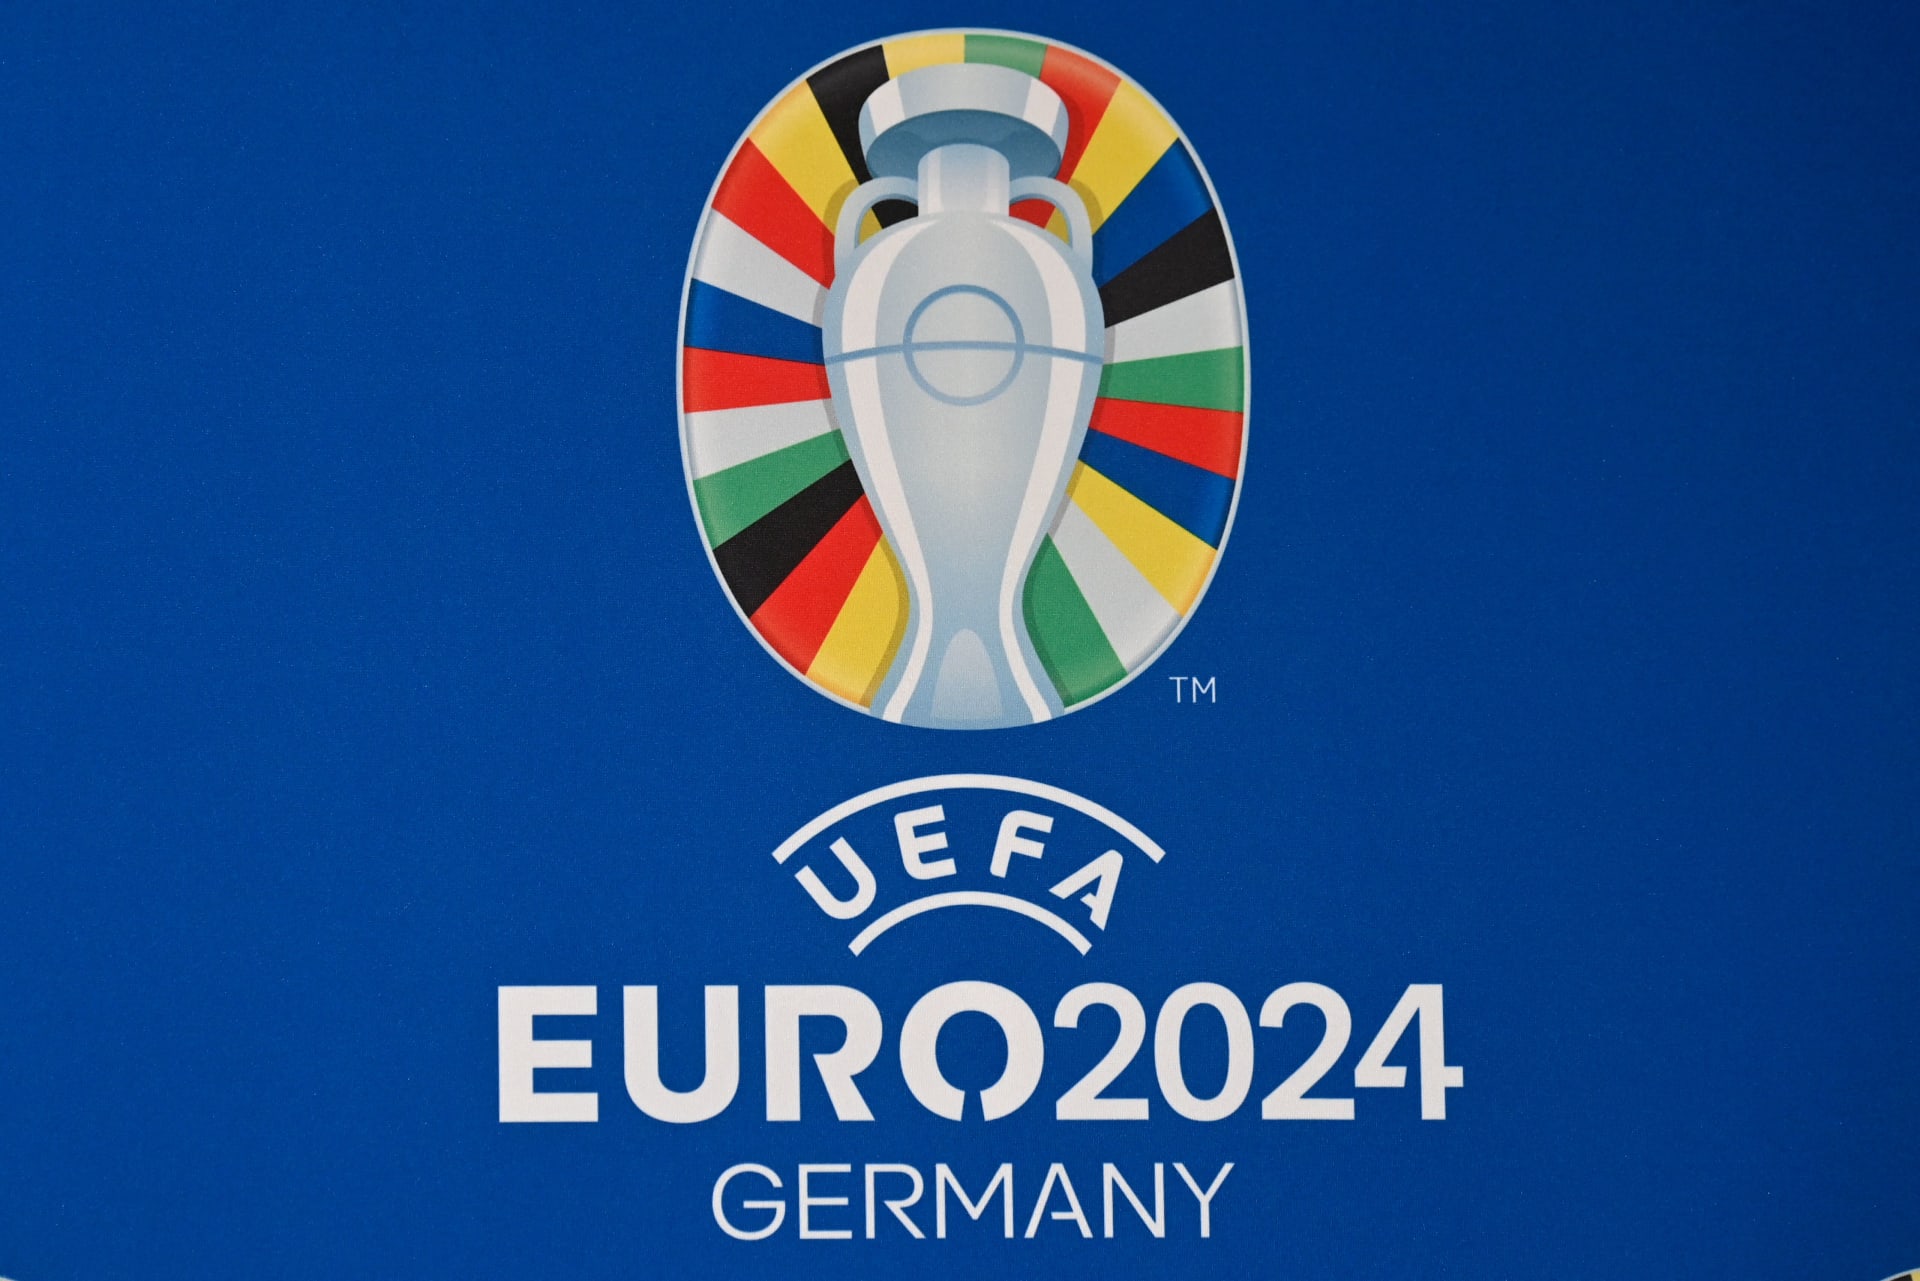 يورو 2024